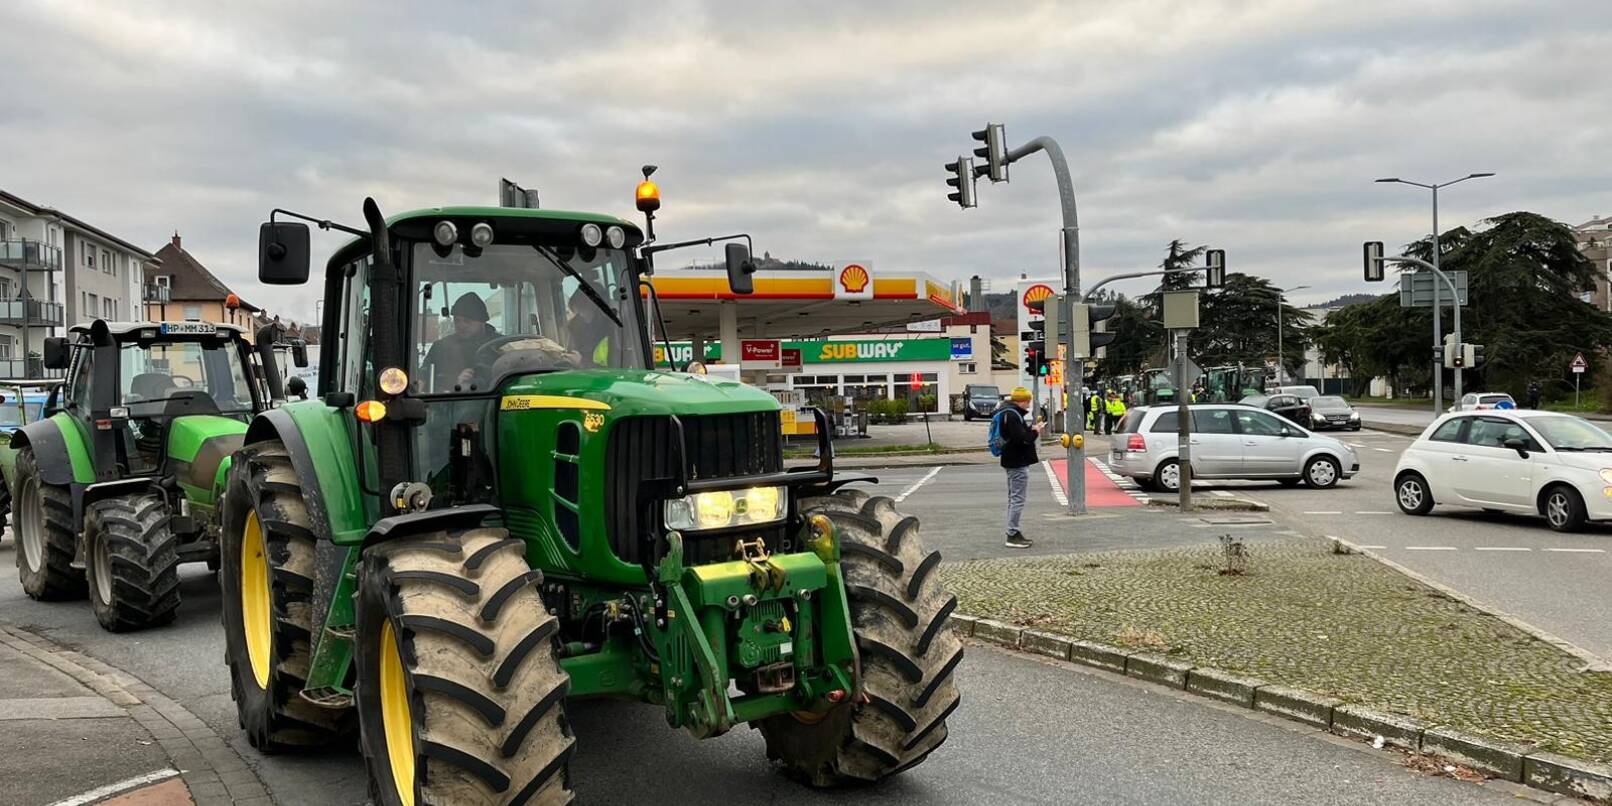 Protest auch am Händelknoten: An gleich drei Kreuzungen in der Weinheim (unser Bild zeigt Mannheimer Straße Ecke Händelstraße) brachten die Landwirte ihre Traktoren demonstrativ in Stellung.